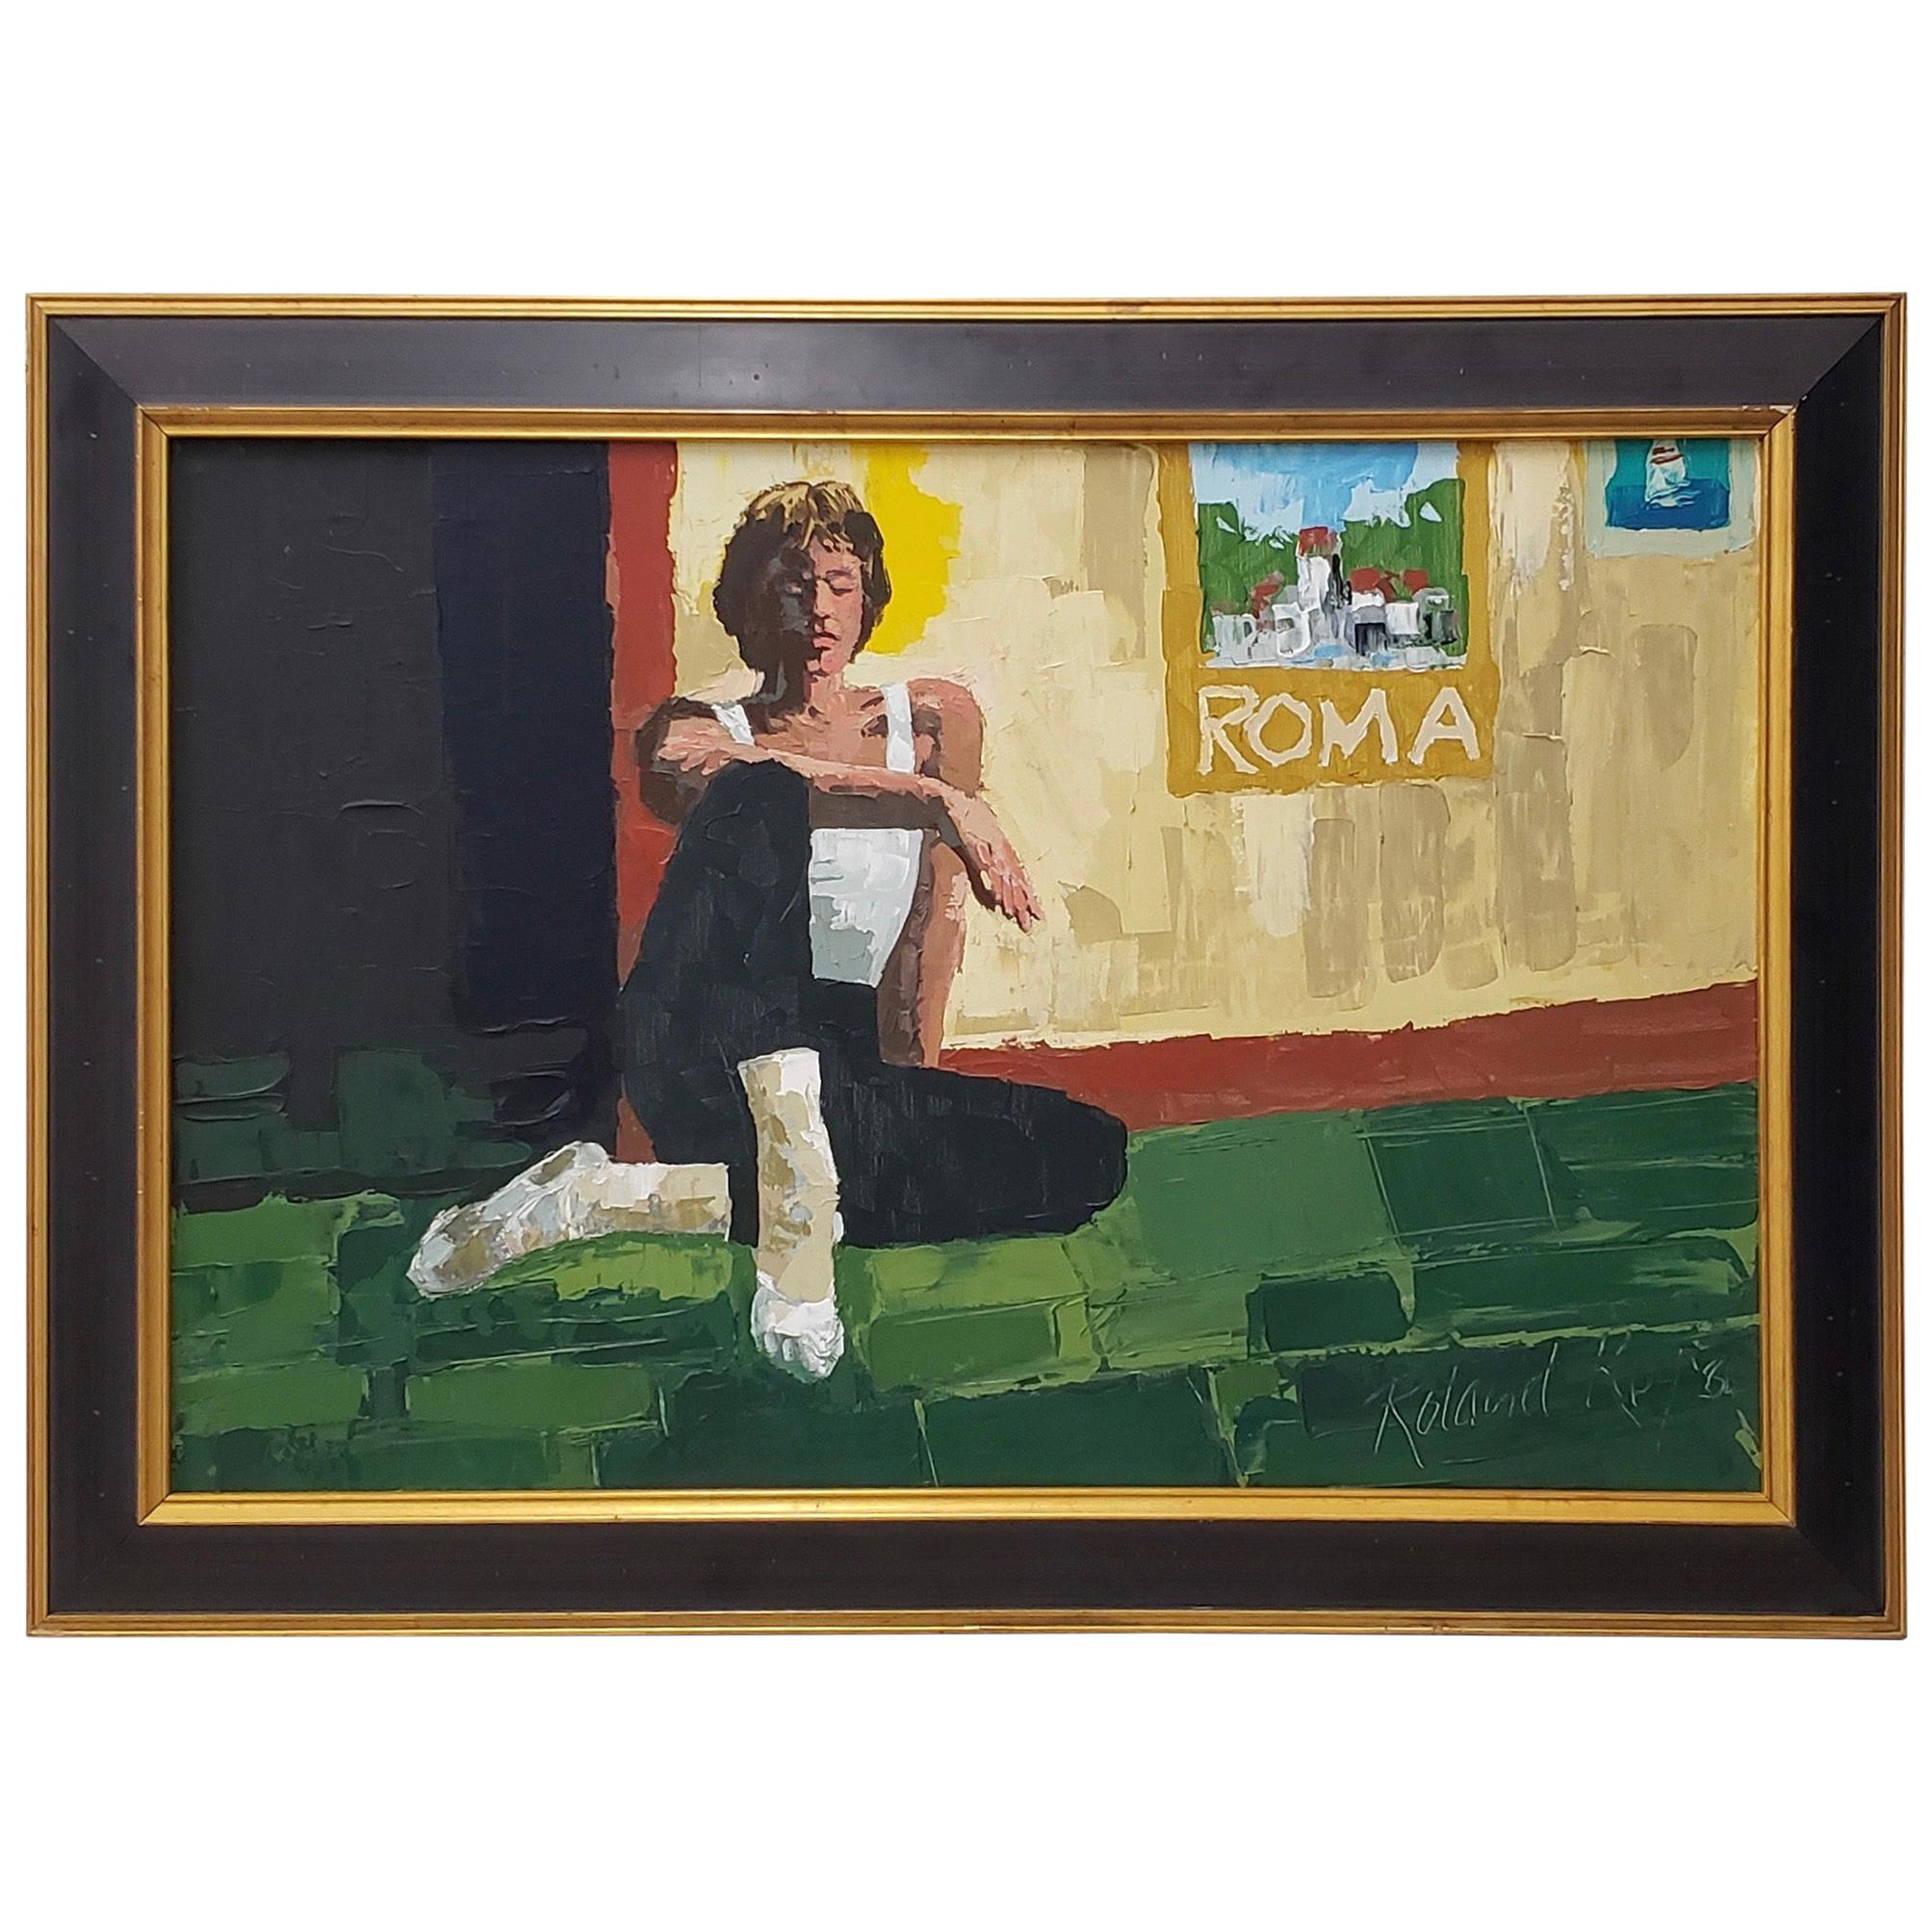 Huile originale sur toile « Roma » de Roland Roy (Hawaii, Californie) du XXe siècle